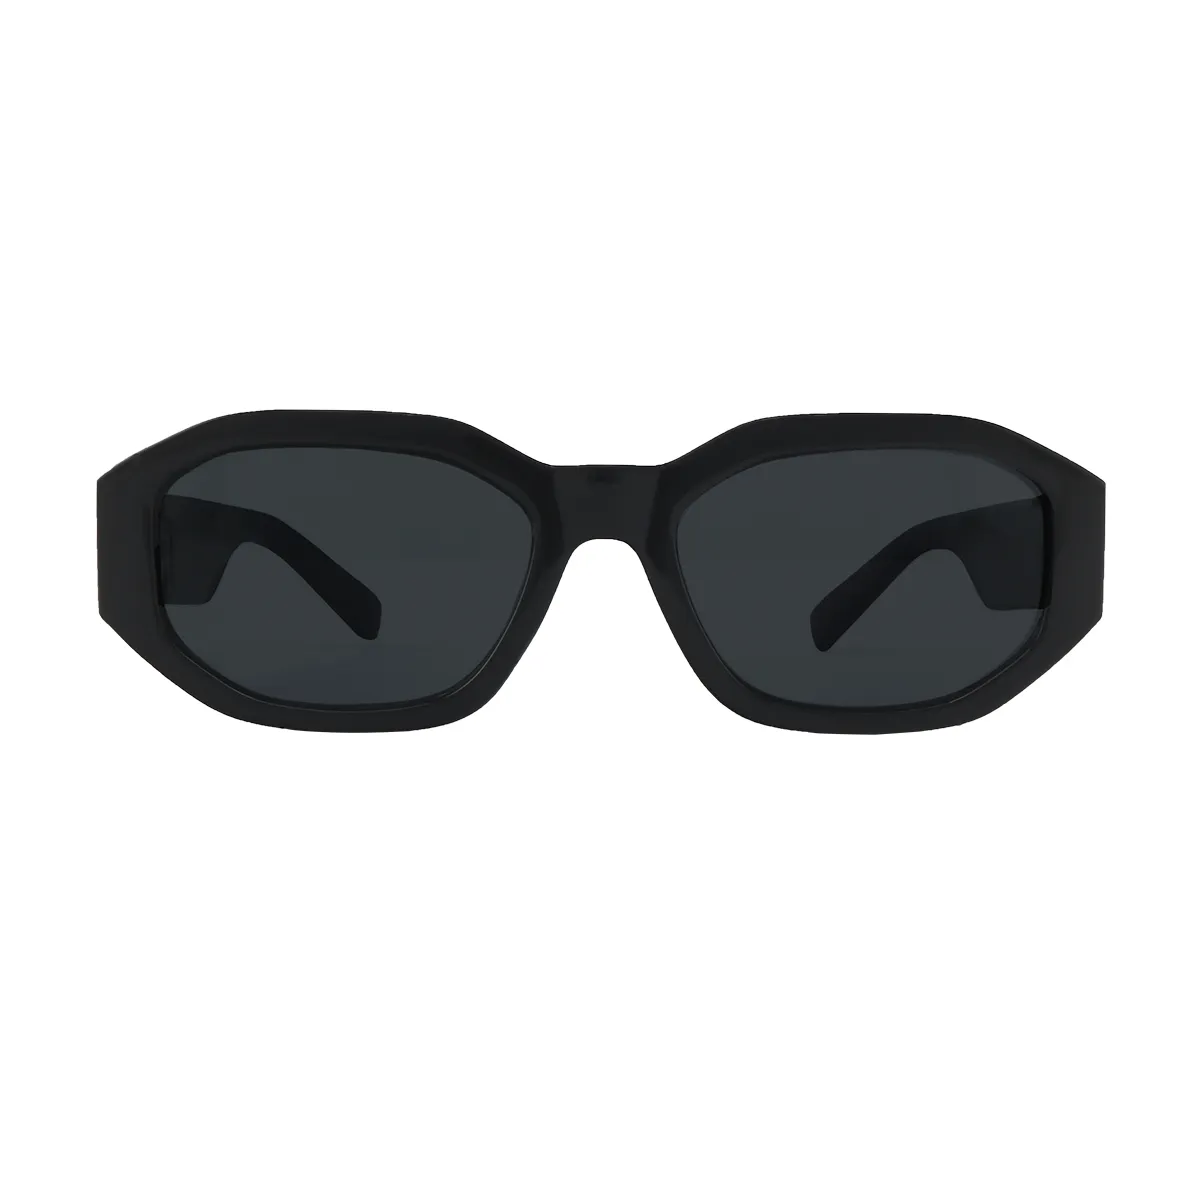 Maris - glasses Black Sunglasses for Women